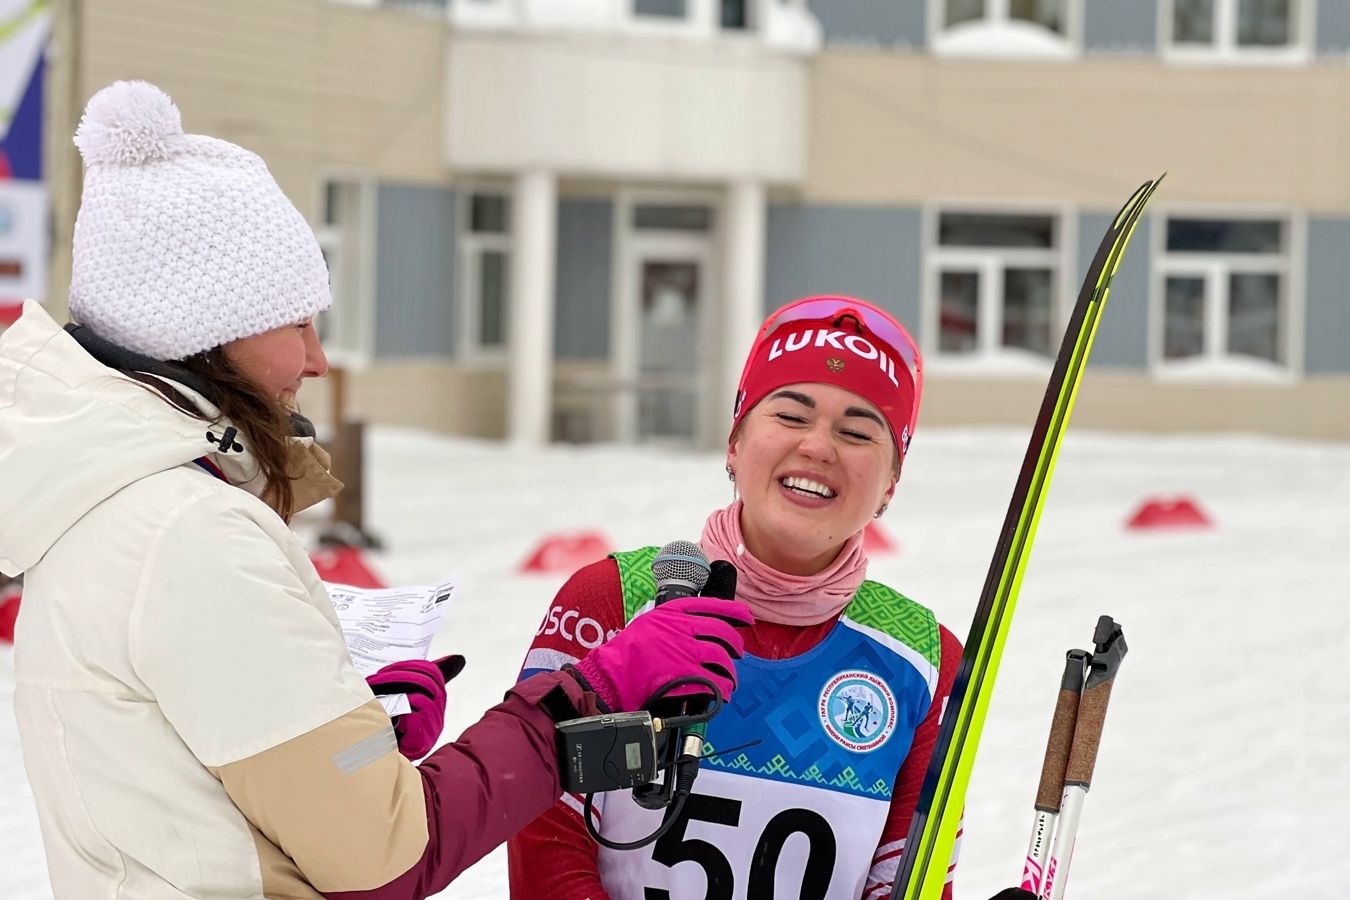 Надежда русских лыж на Олимпиаде-2026 из Вологды стала совершеннолетней. Что нужно знать о ней